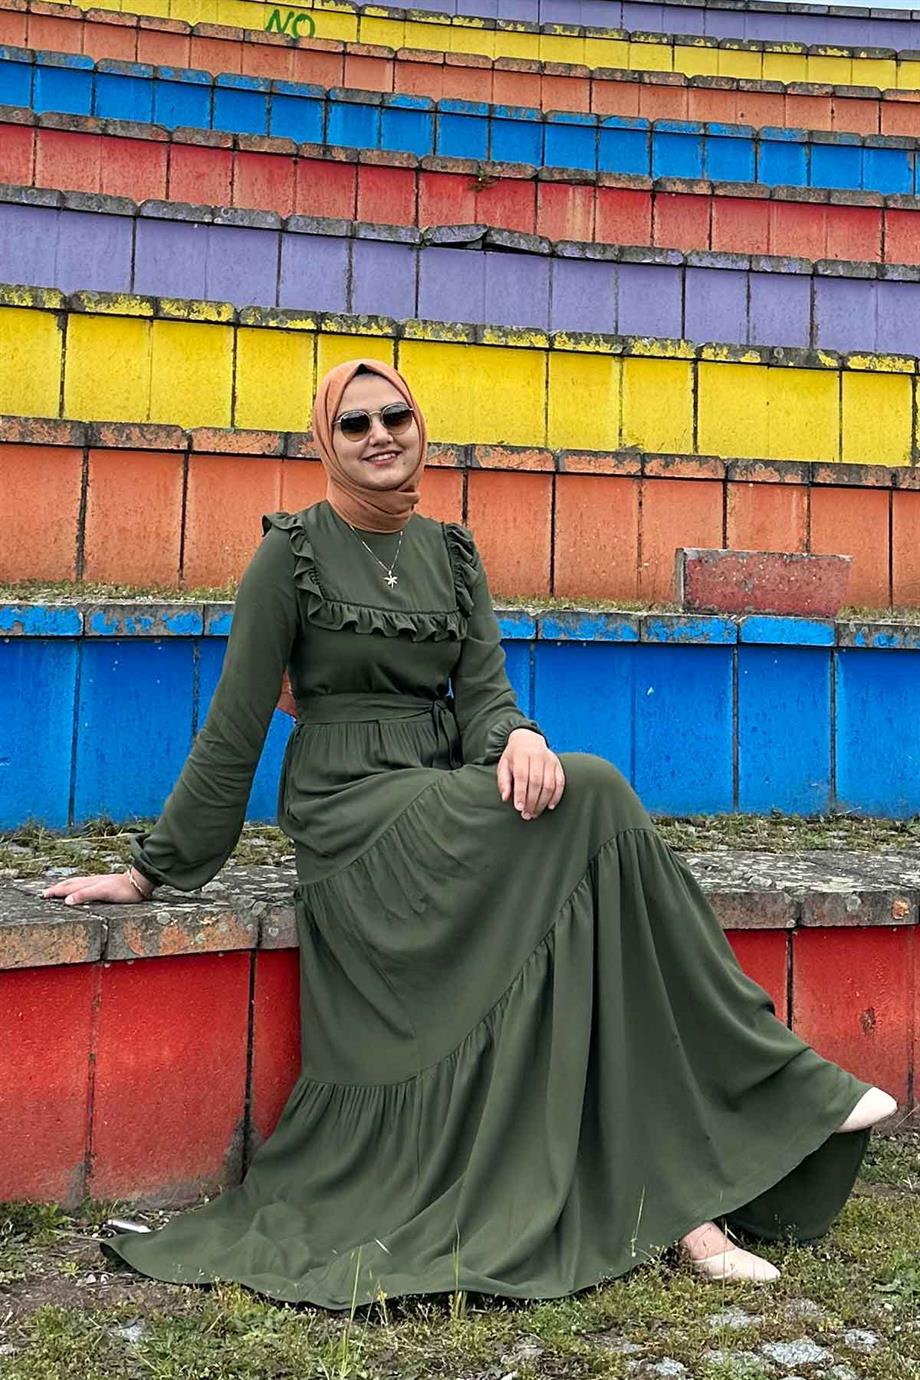 Bade Haki Elbise | Rabia Şamlı | Tesettür Giyim, Elbise ve Kadın Giyim  Modası